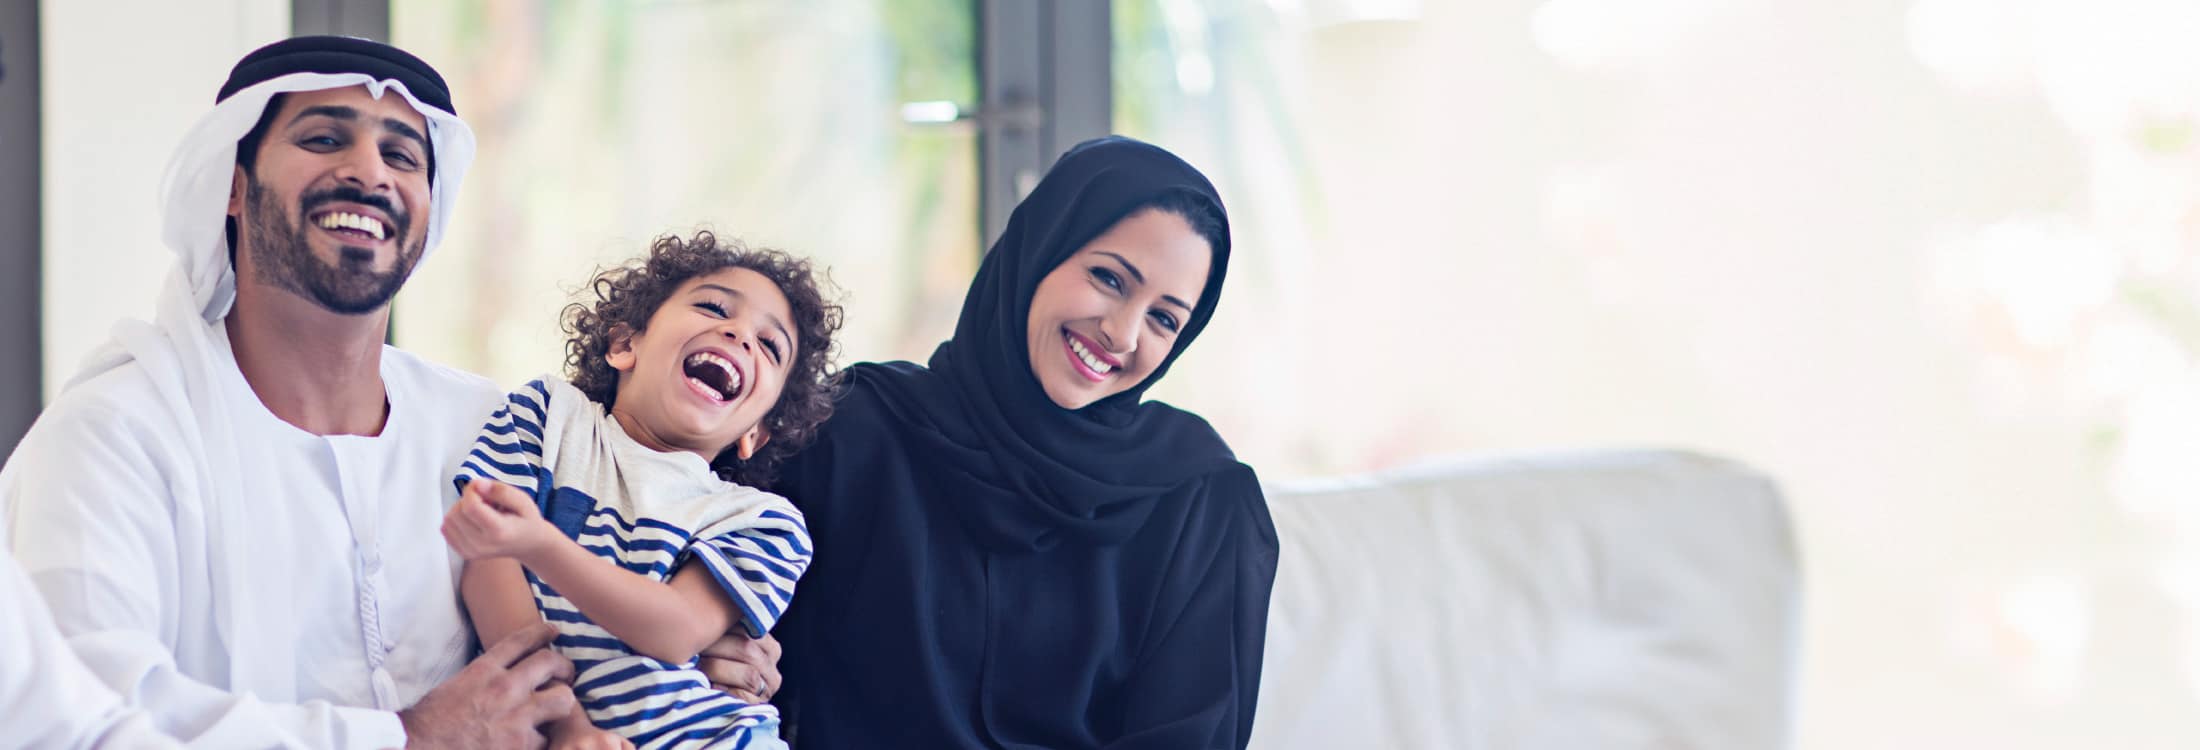 Envie dinheiro online, rápido e seguro para seus amigos e familiares nos Emirados Árabes